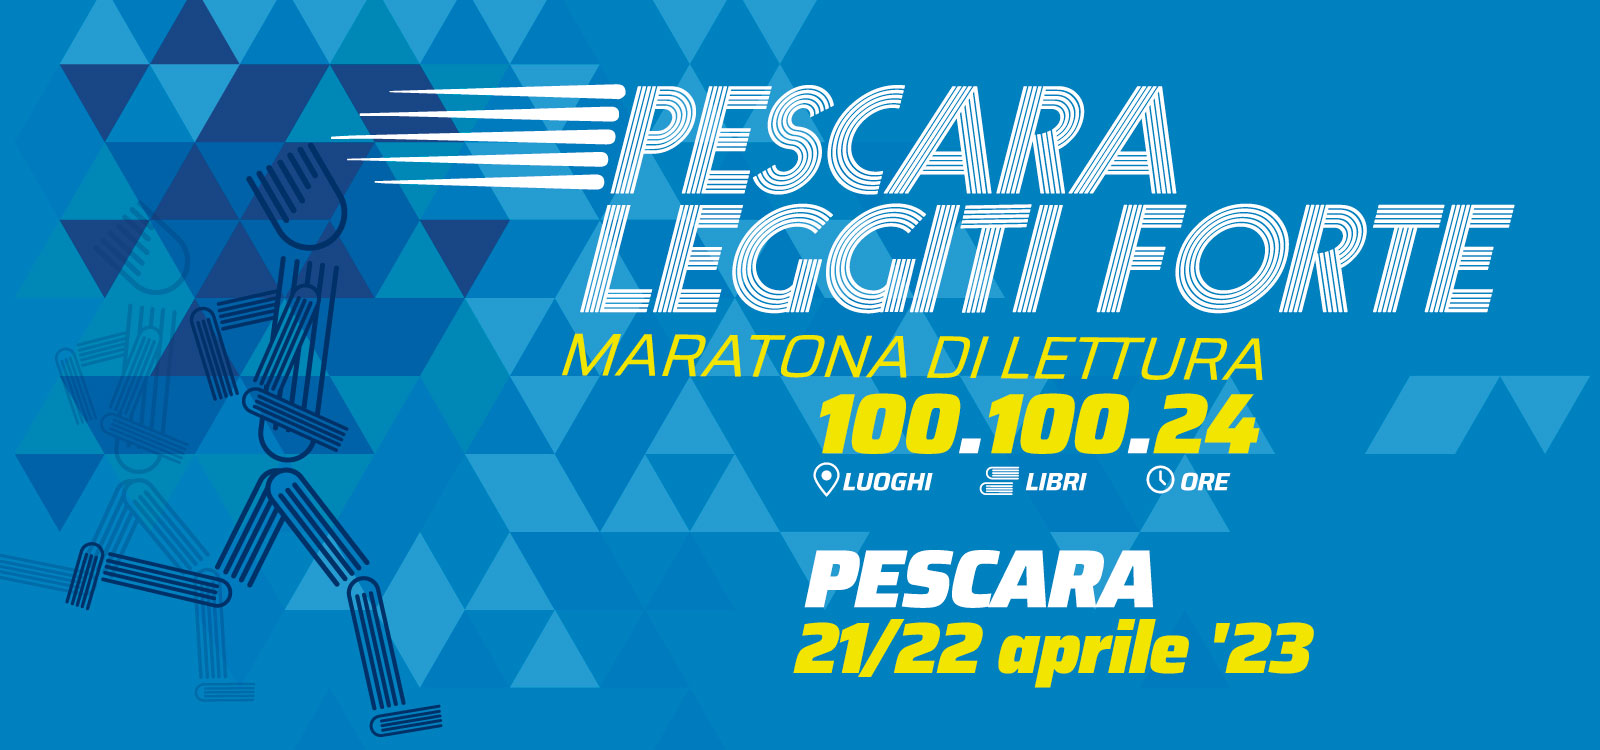 Pescara Leggiti Forte - Maratona di lettura